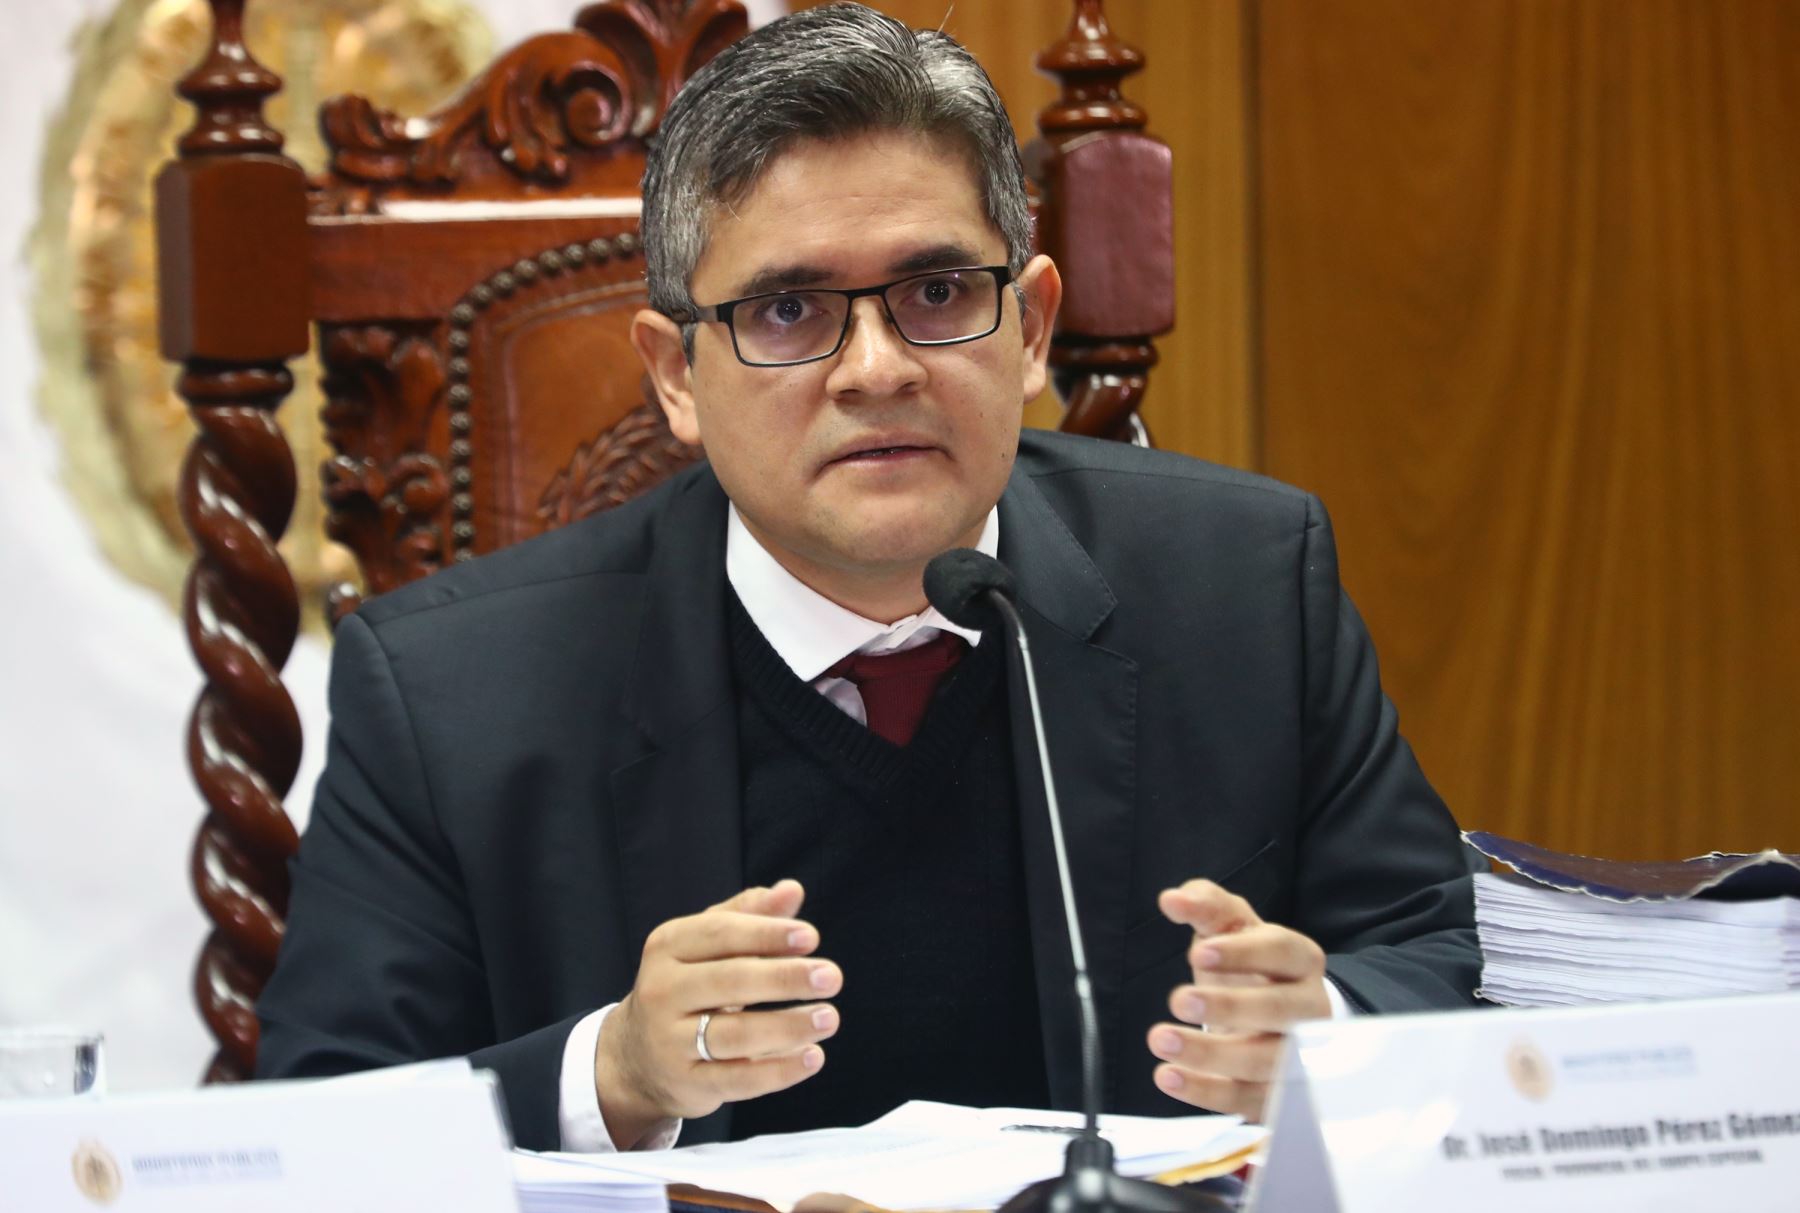 José Domingo Pérez busca ser juez: rindió examen de la JNJ y se defendió del proceso interno contra él en la Fiscalía 